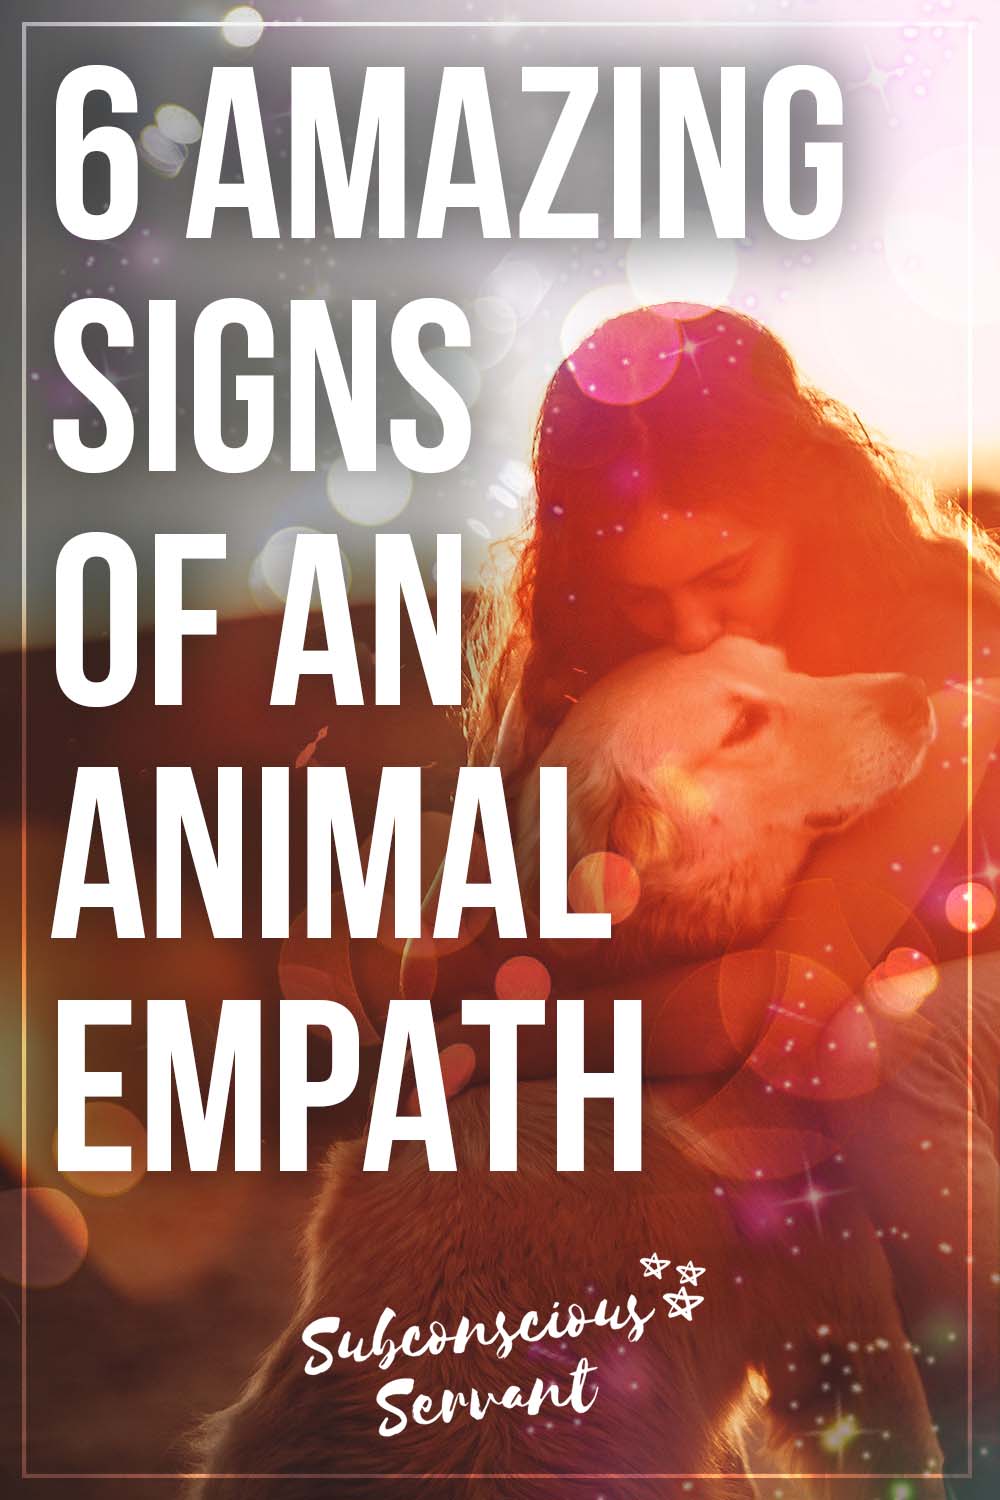 The Animal Empath Explained [6 Amazing Signs & Traits]